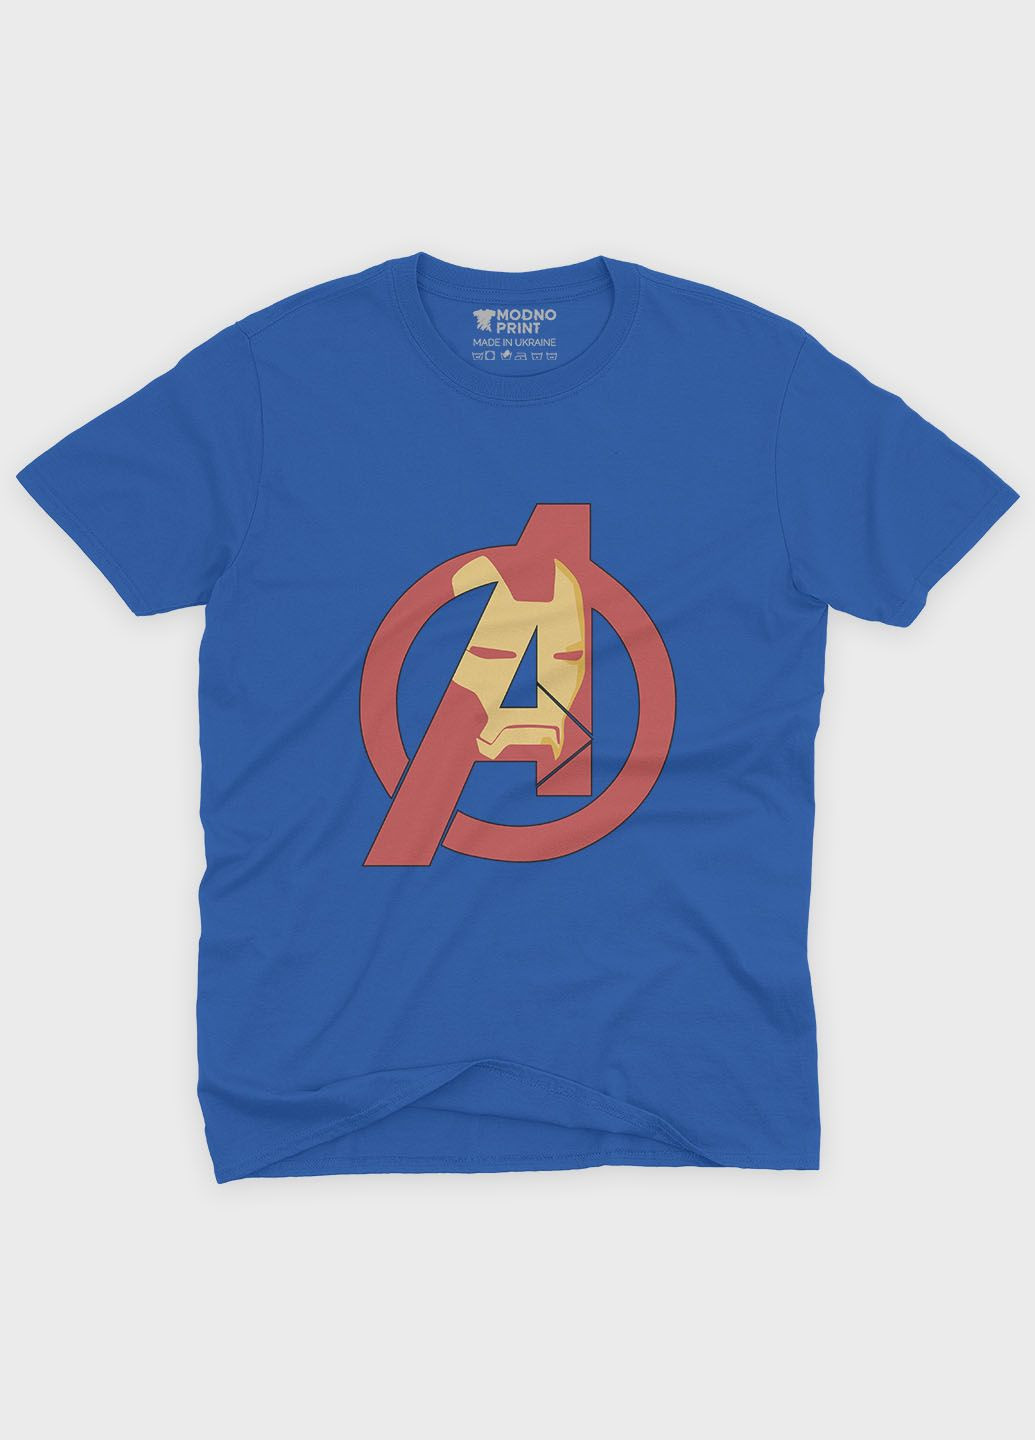 Синяя демисезонная футболка для мальчика с принтом супергероя - железный человек (ts001-1-brr-006-016-007-b) Modno